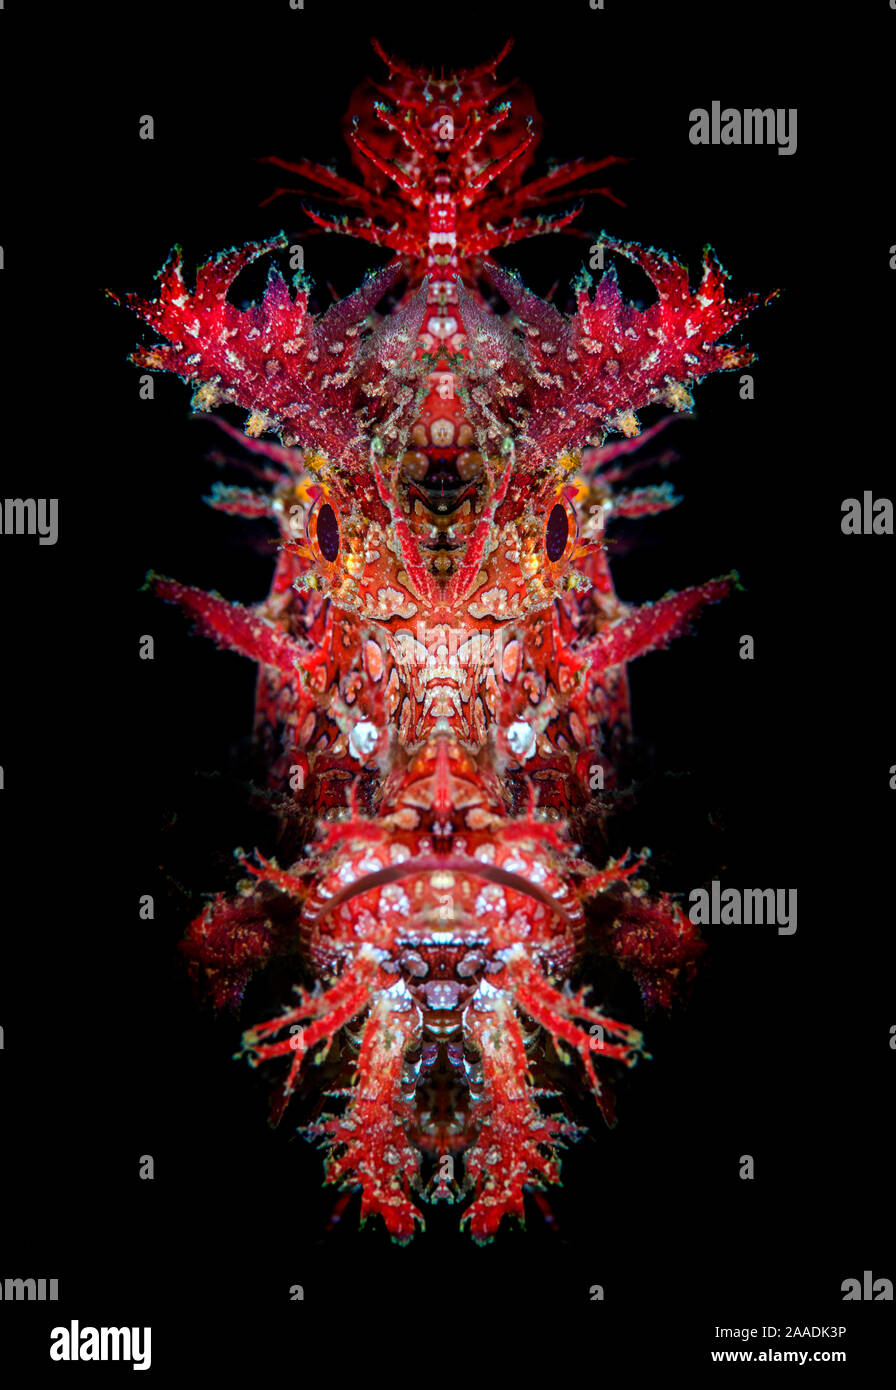 Ritratto di mirroring di Weedy scorfani (Rhinopias frondosa). Bitung, Nord Sulawesi, Indonesia. Lembeh strait Molucca Sea. Manipolati digitalmente (la faccia viene riflessa verso il basso a metà linea). Foto Stock